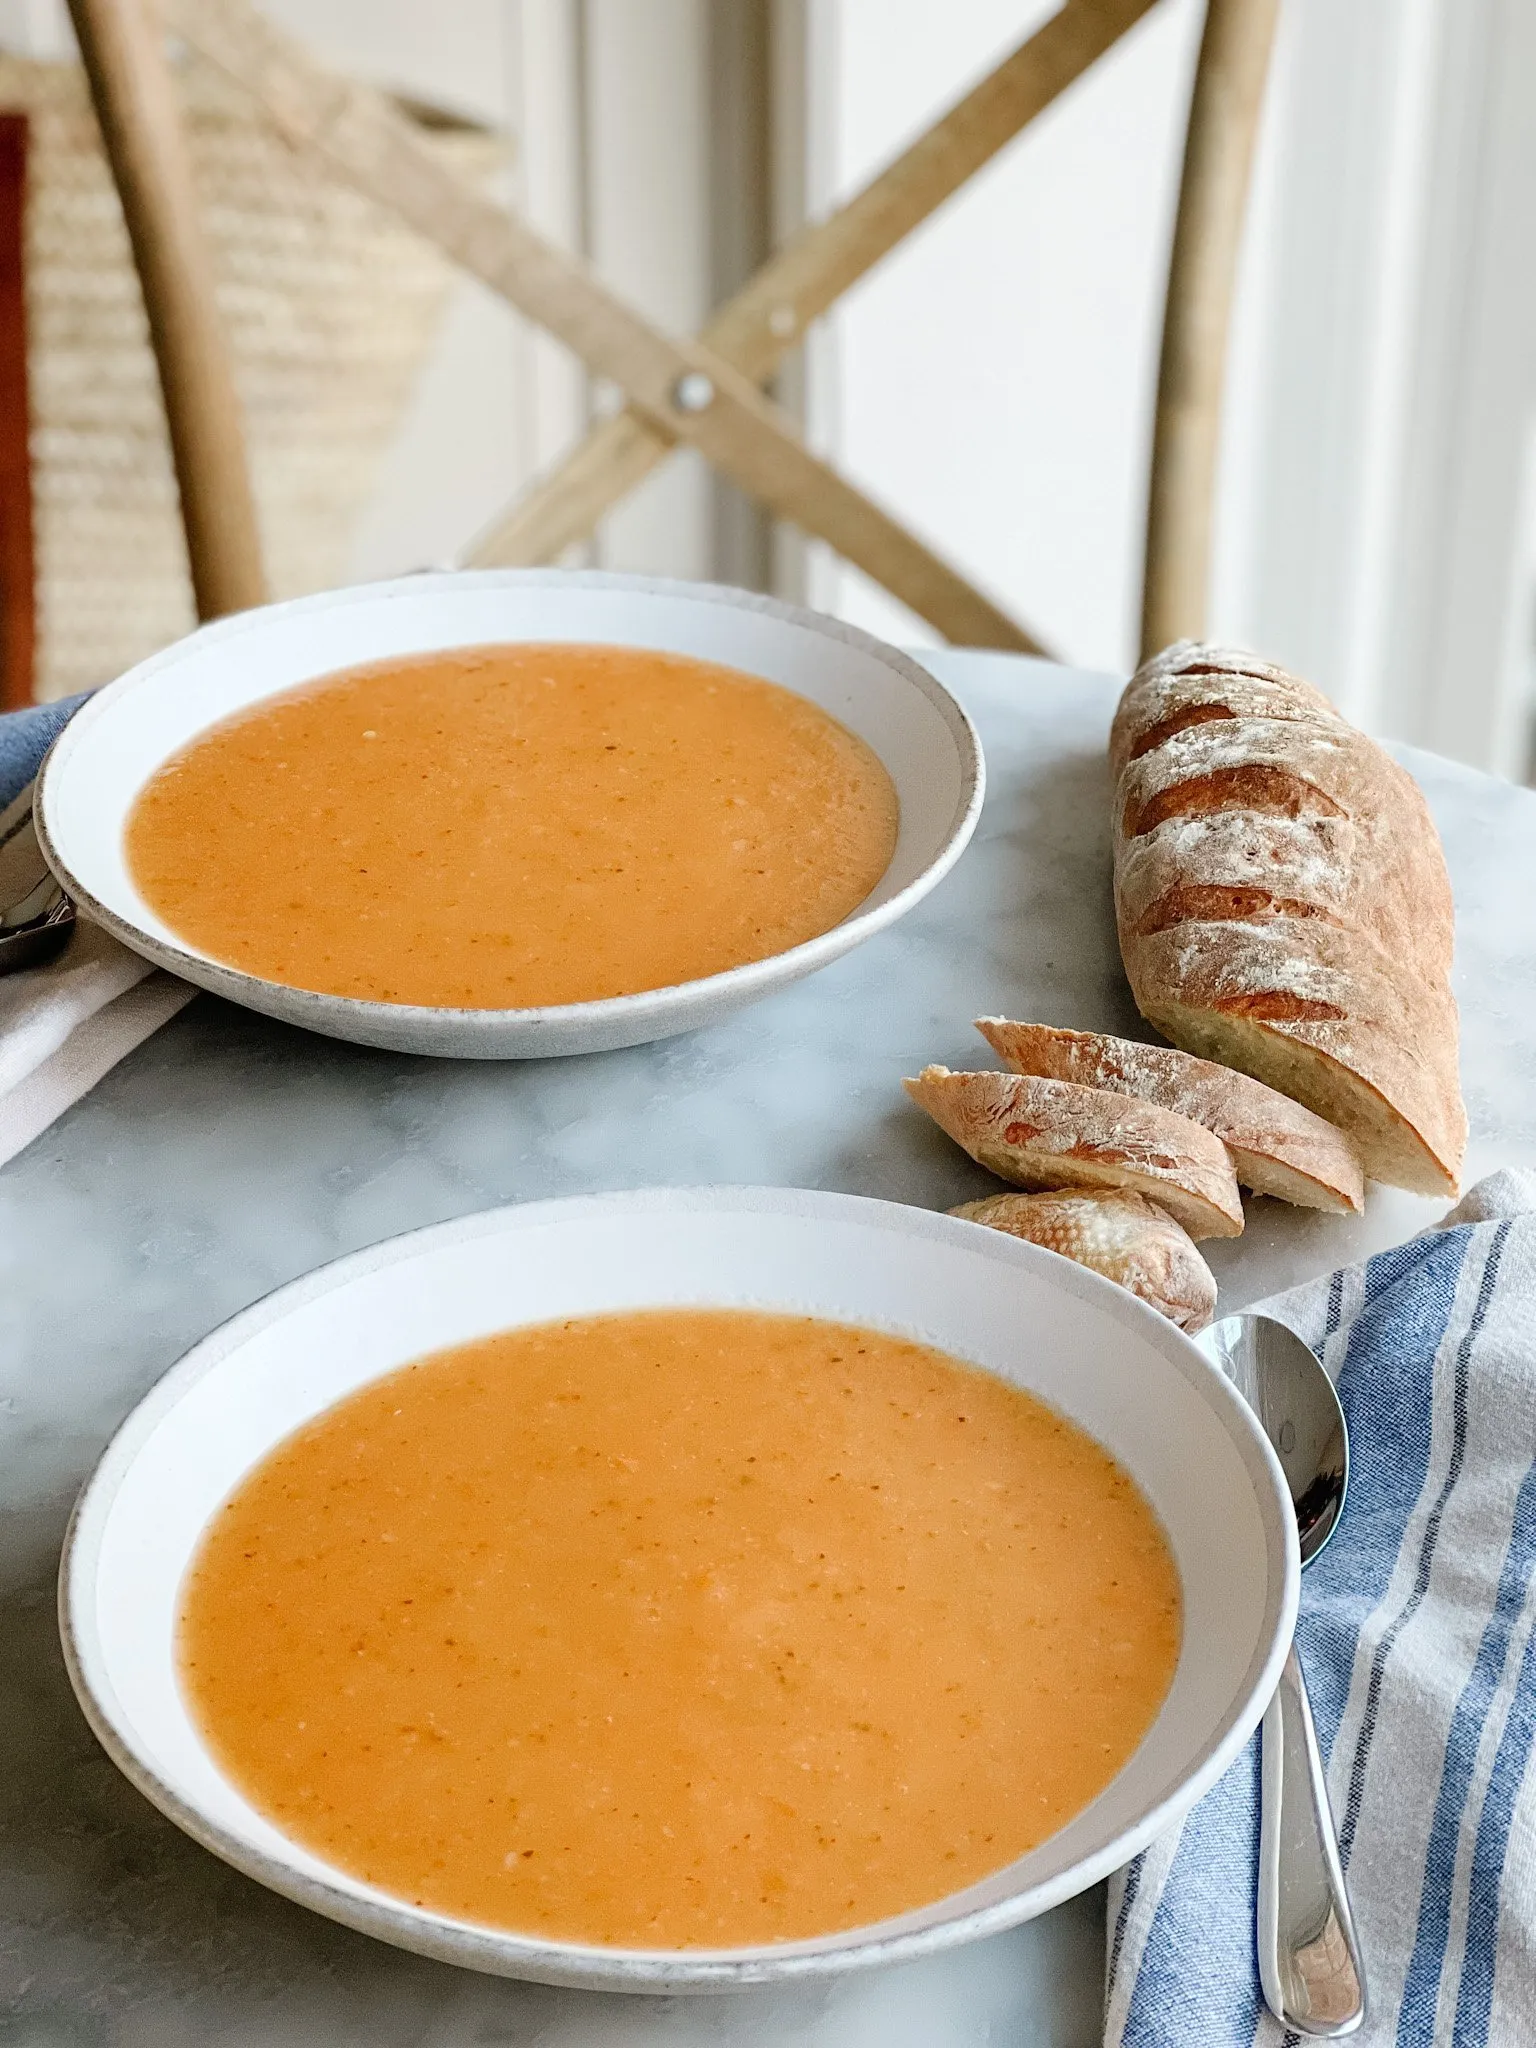 la Soupe de Mamie vegetable soup in two bowls with a baguette 2